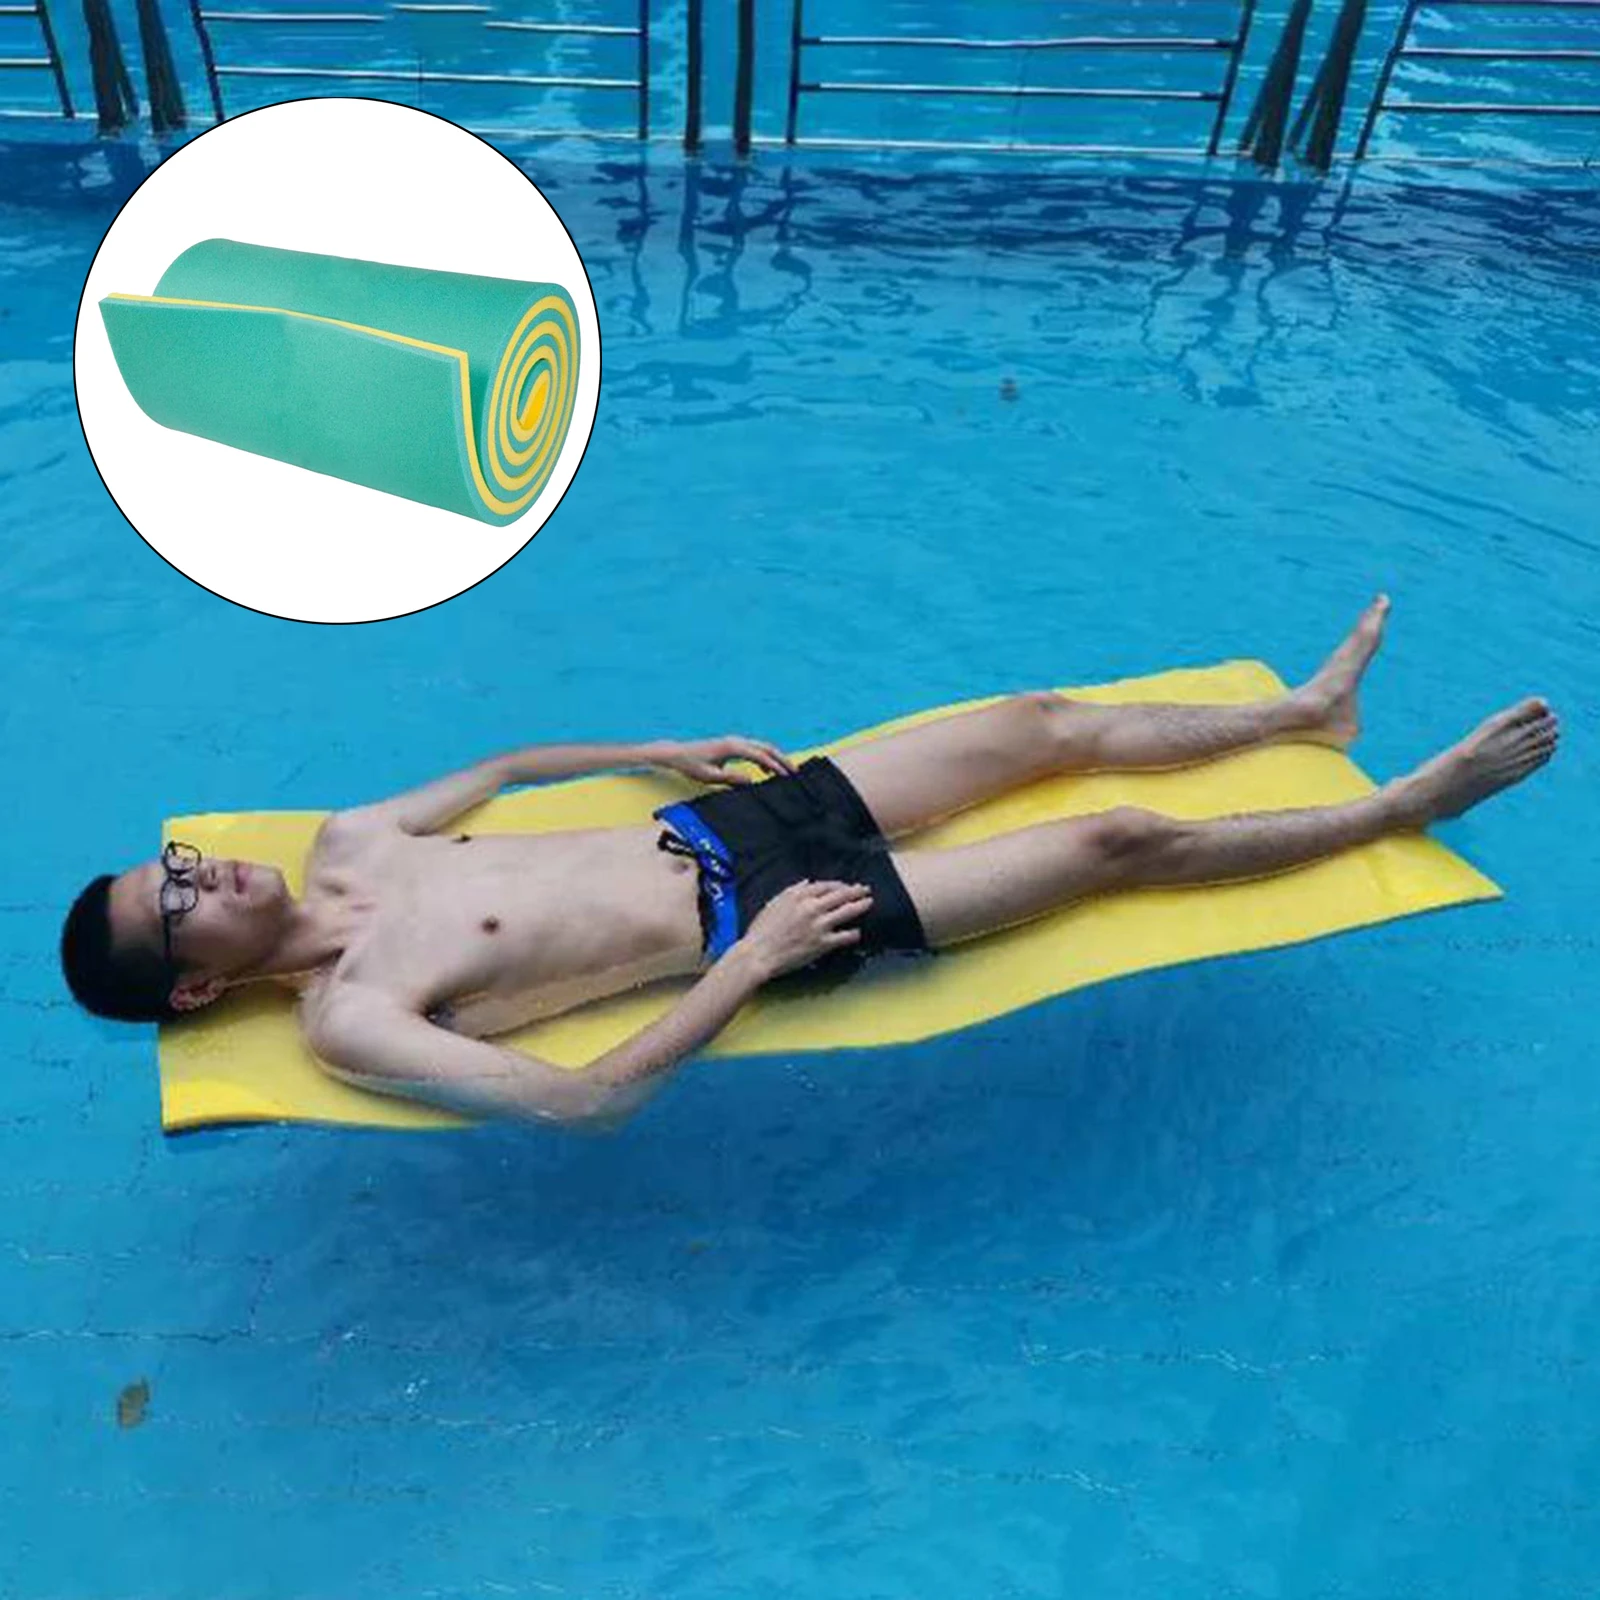 Water Float Mat Swim Pool Lake Floating Pad Kid Mattress Bed Blanket Toy